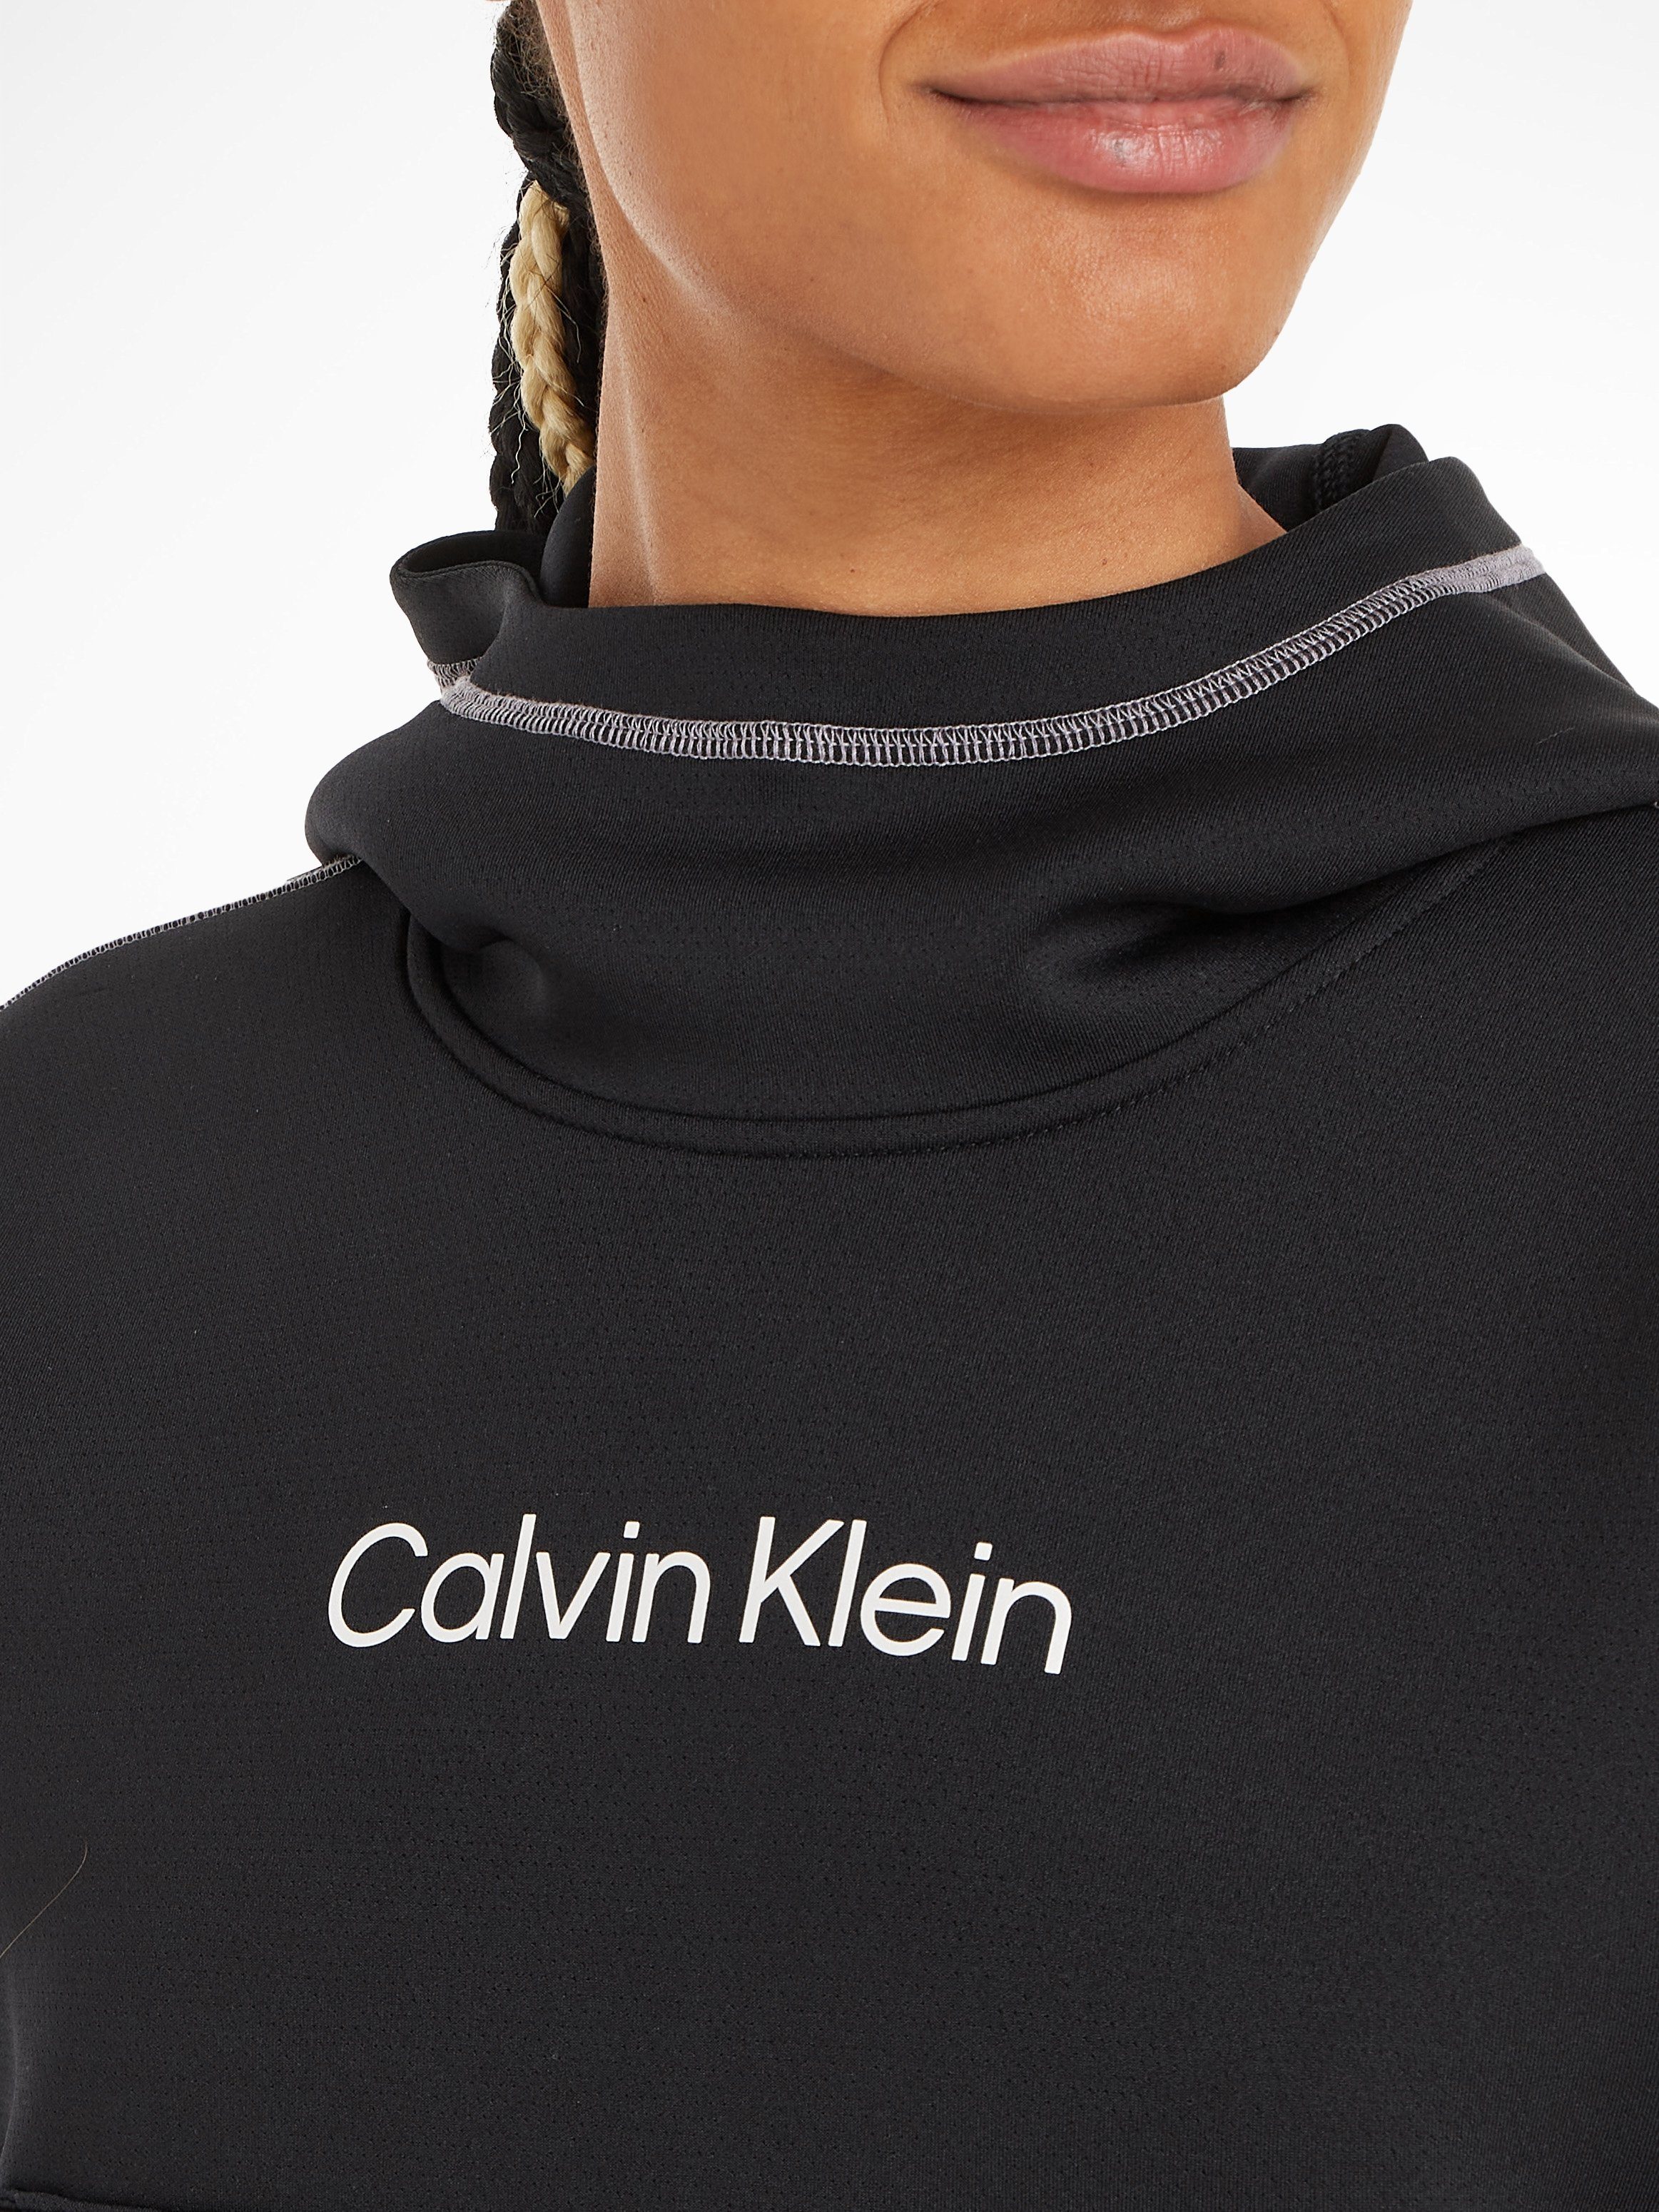 Calvin Klein PW Hoodie - Sport schwarz Trainingskapuzenpullover